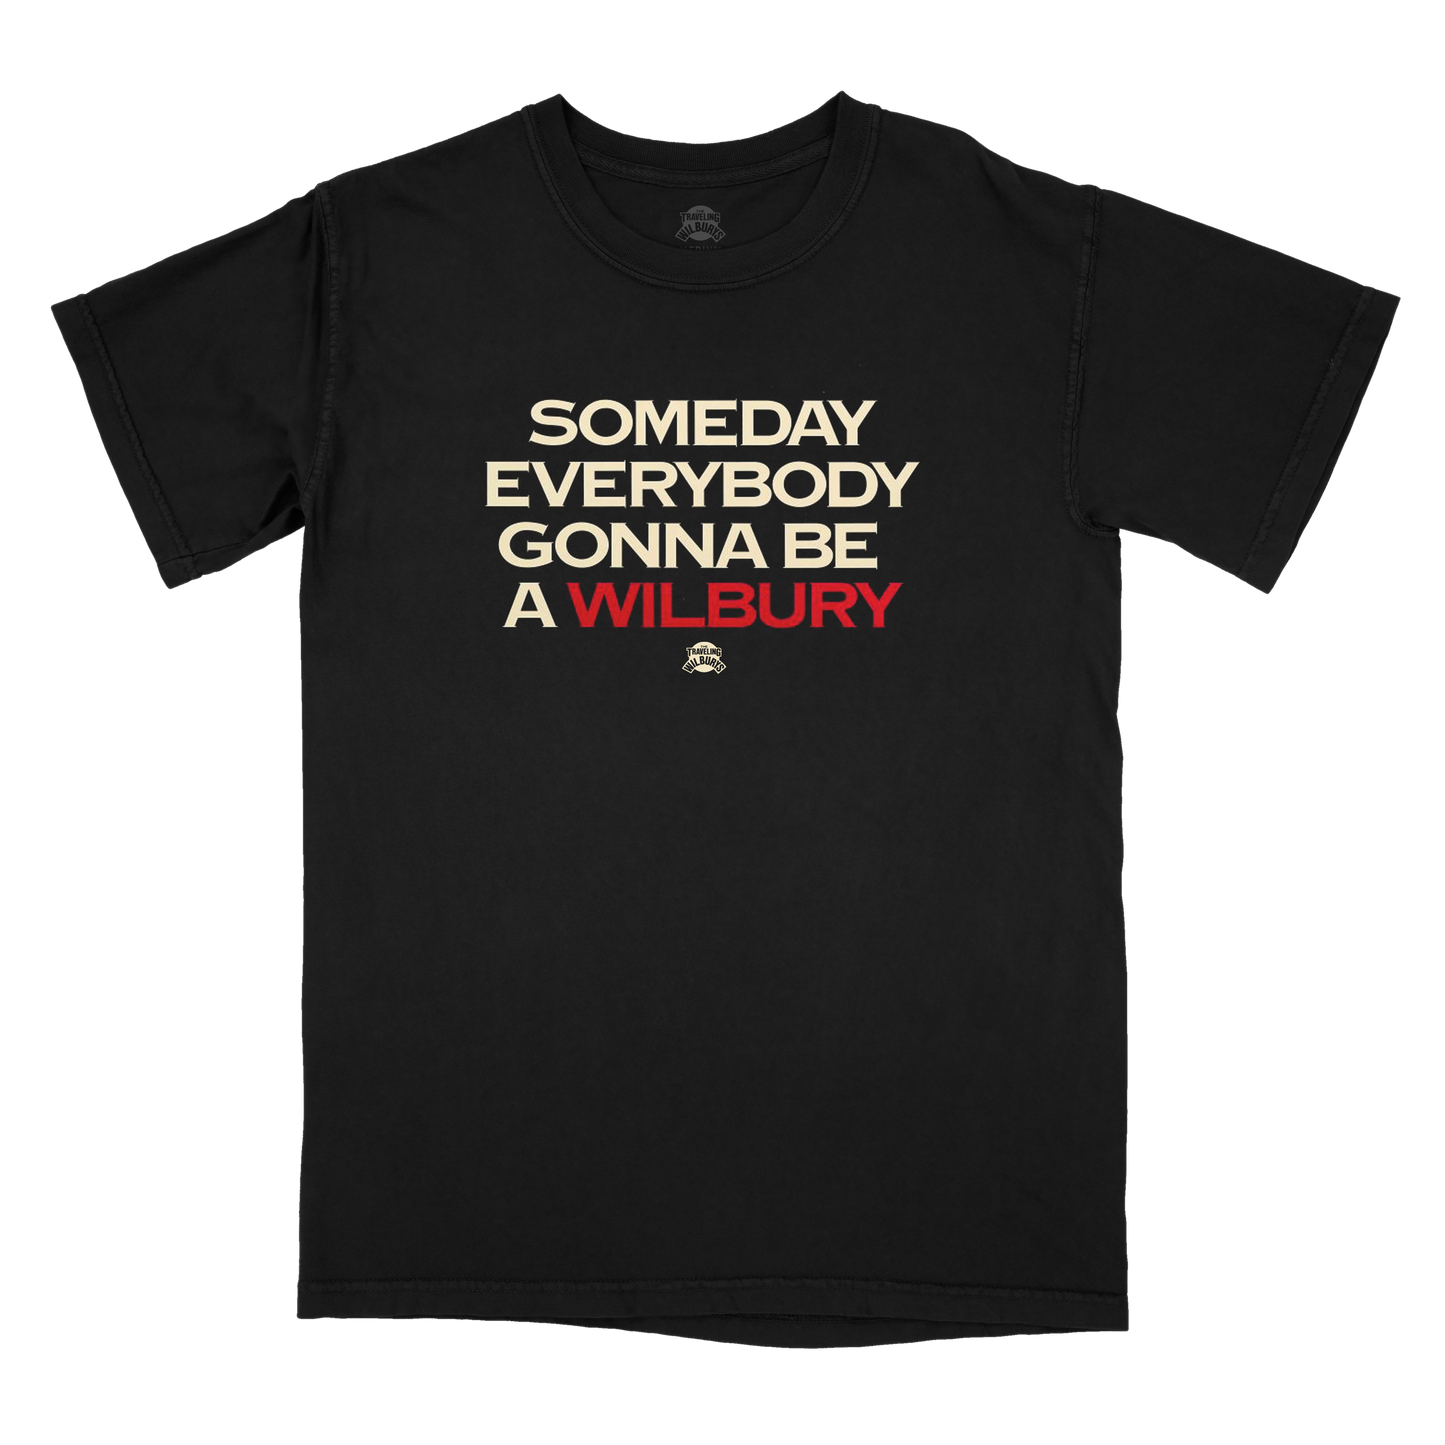 Everybody T-Shirt